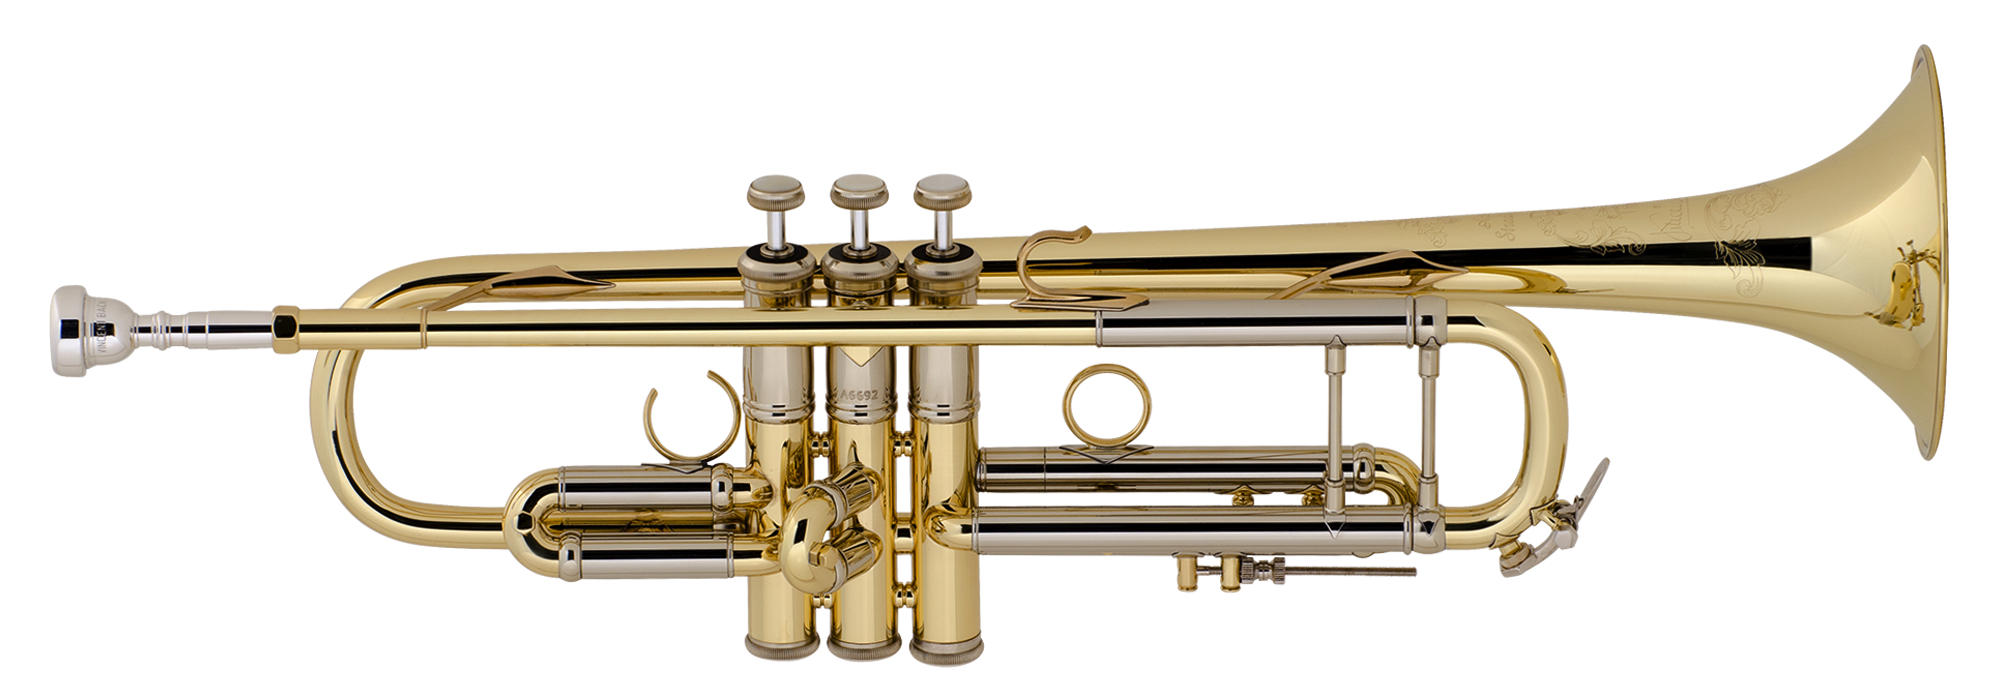 Bach Artisan Collectionシリーズ BbトランペットAB190 GL Trumpet新品在庫状況をご確認ください